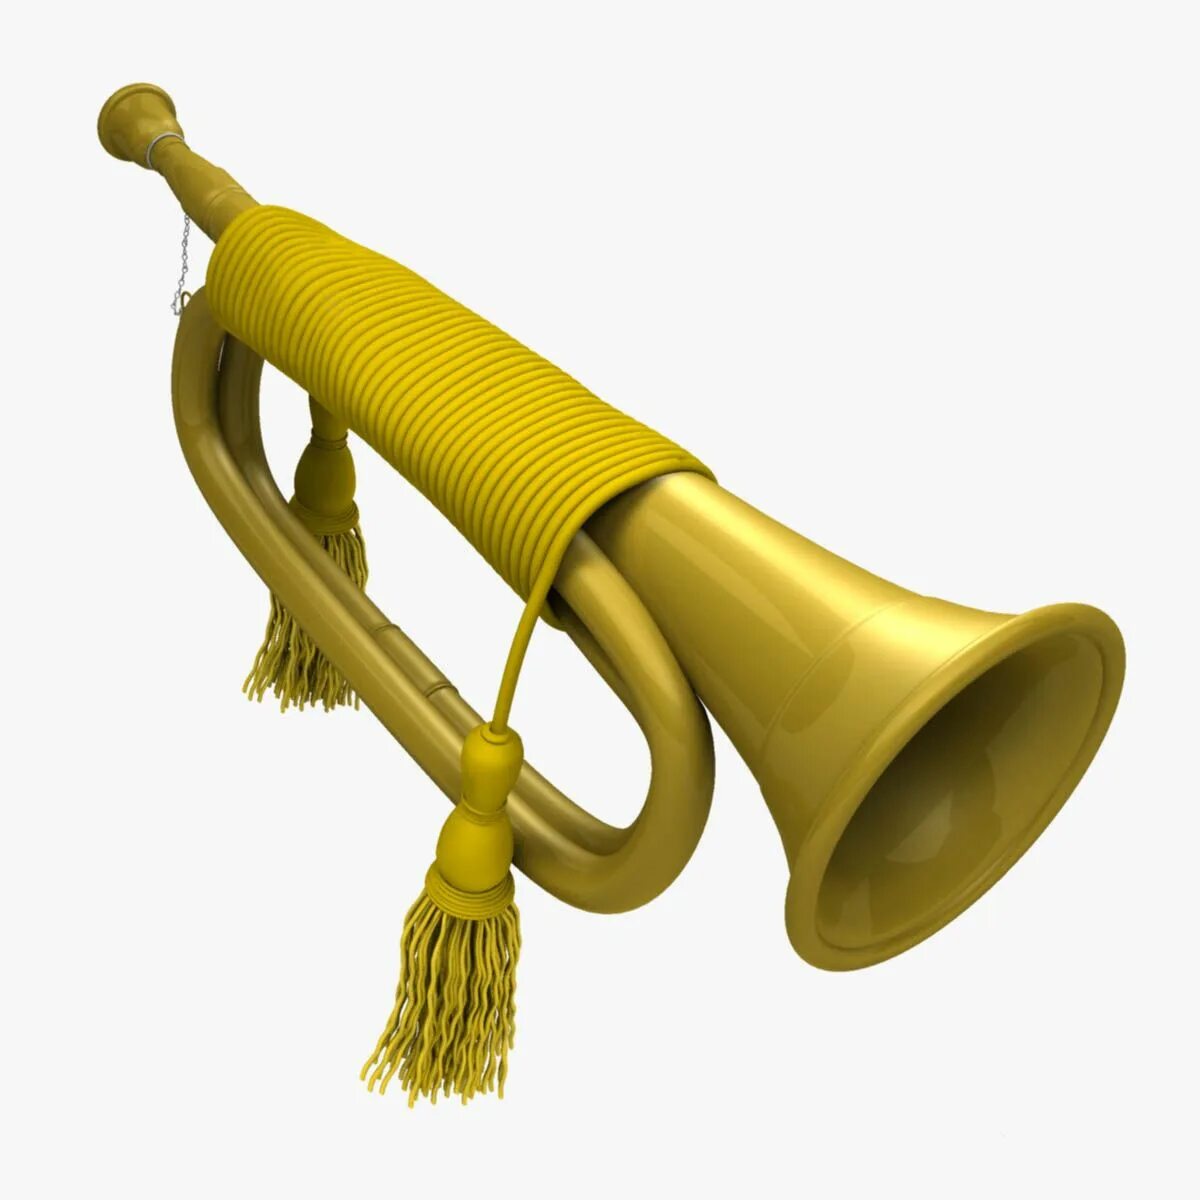 Горн аудиокнига. Музыкальный инструмент "труба". Горн духовой музыкальный инструмент. Трубит в горн. Труба музыкальный инструмент на прозрачном фоне.